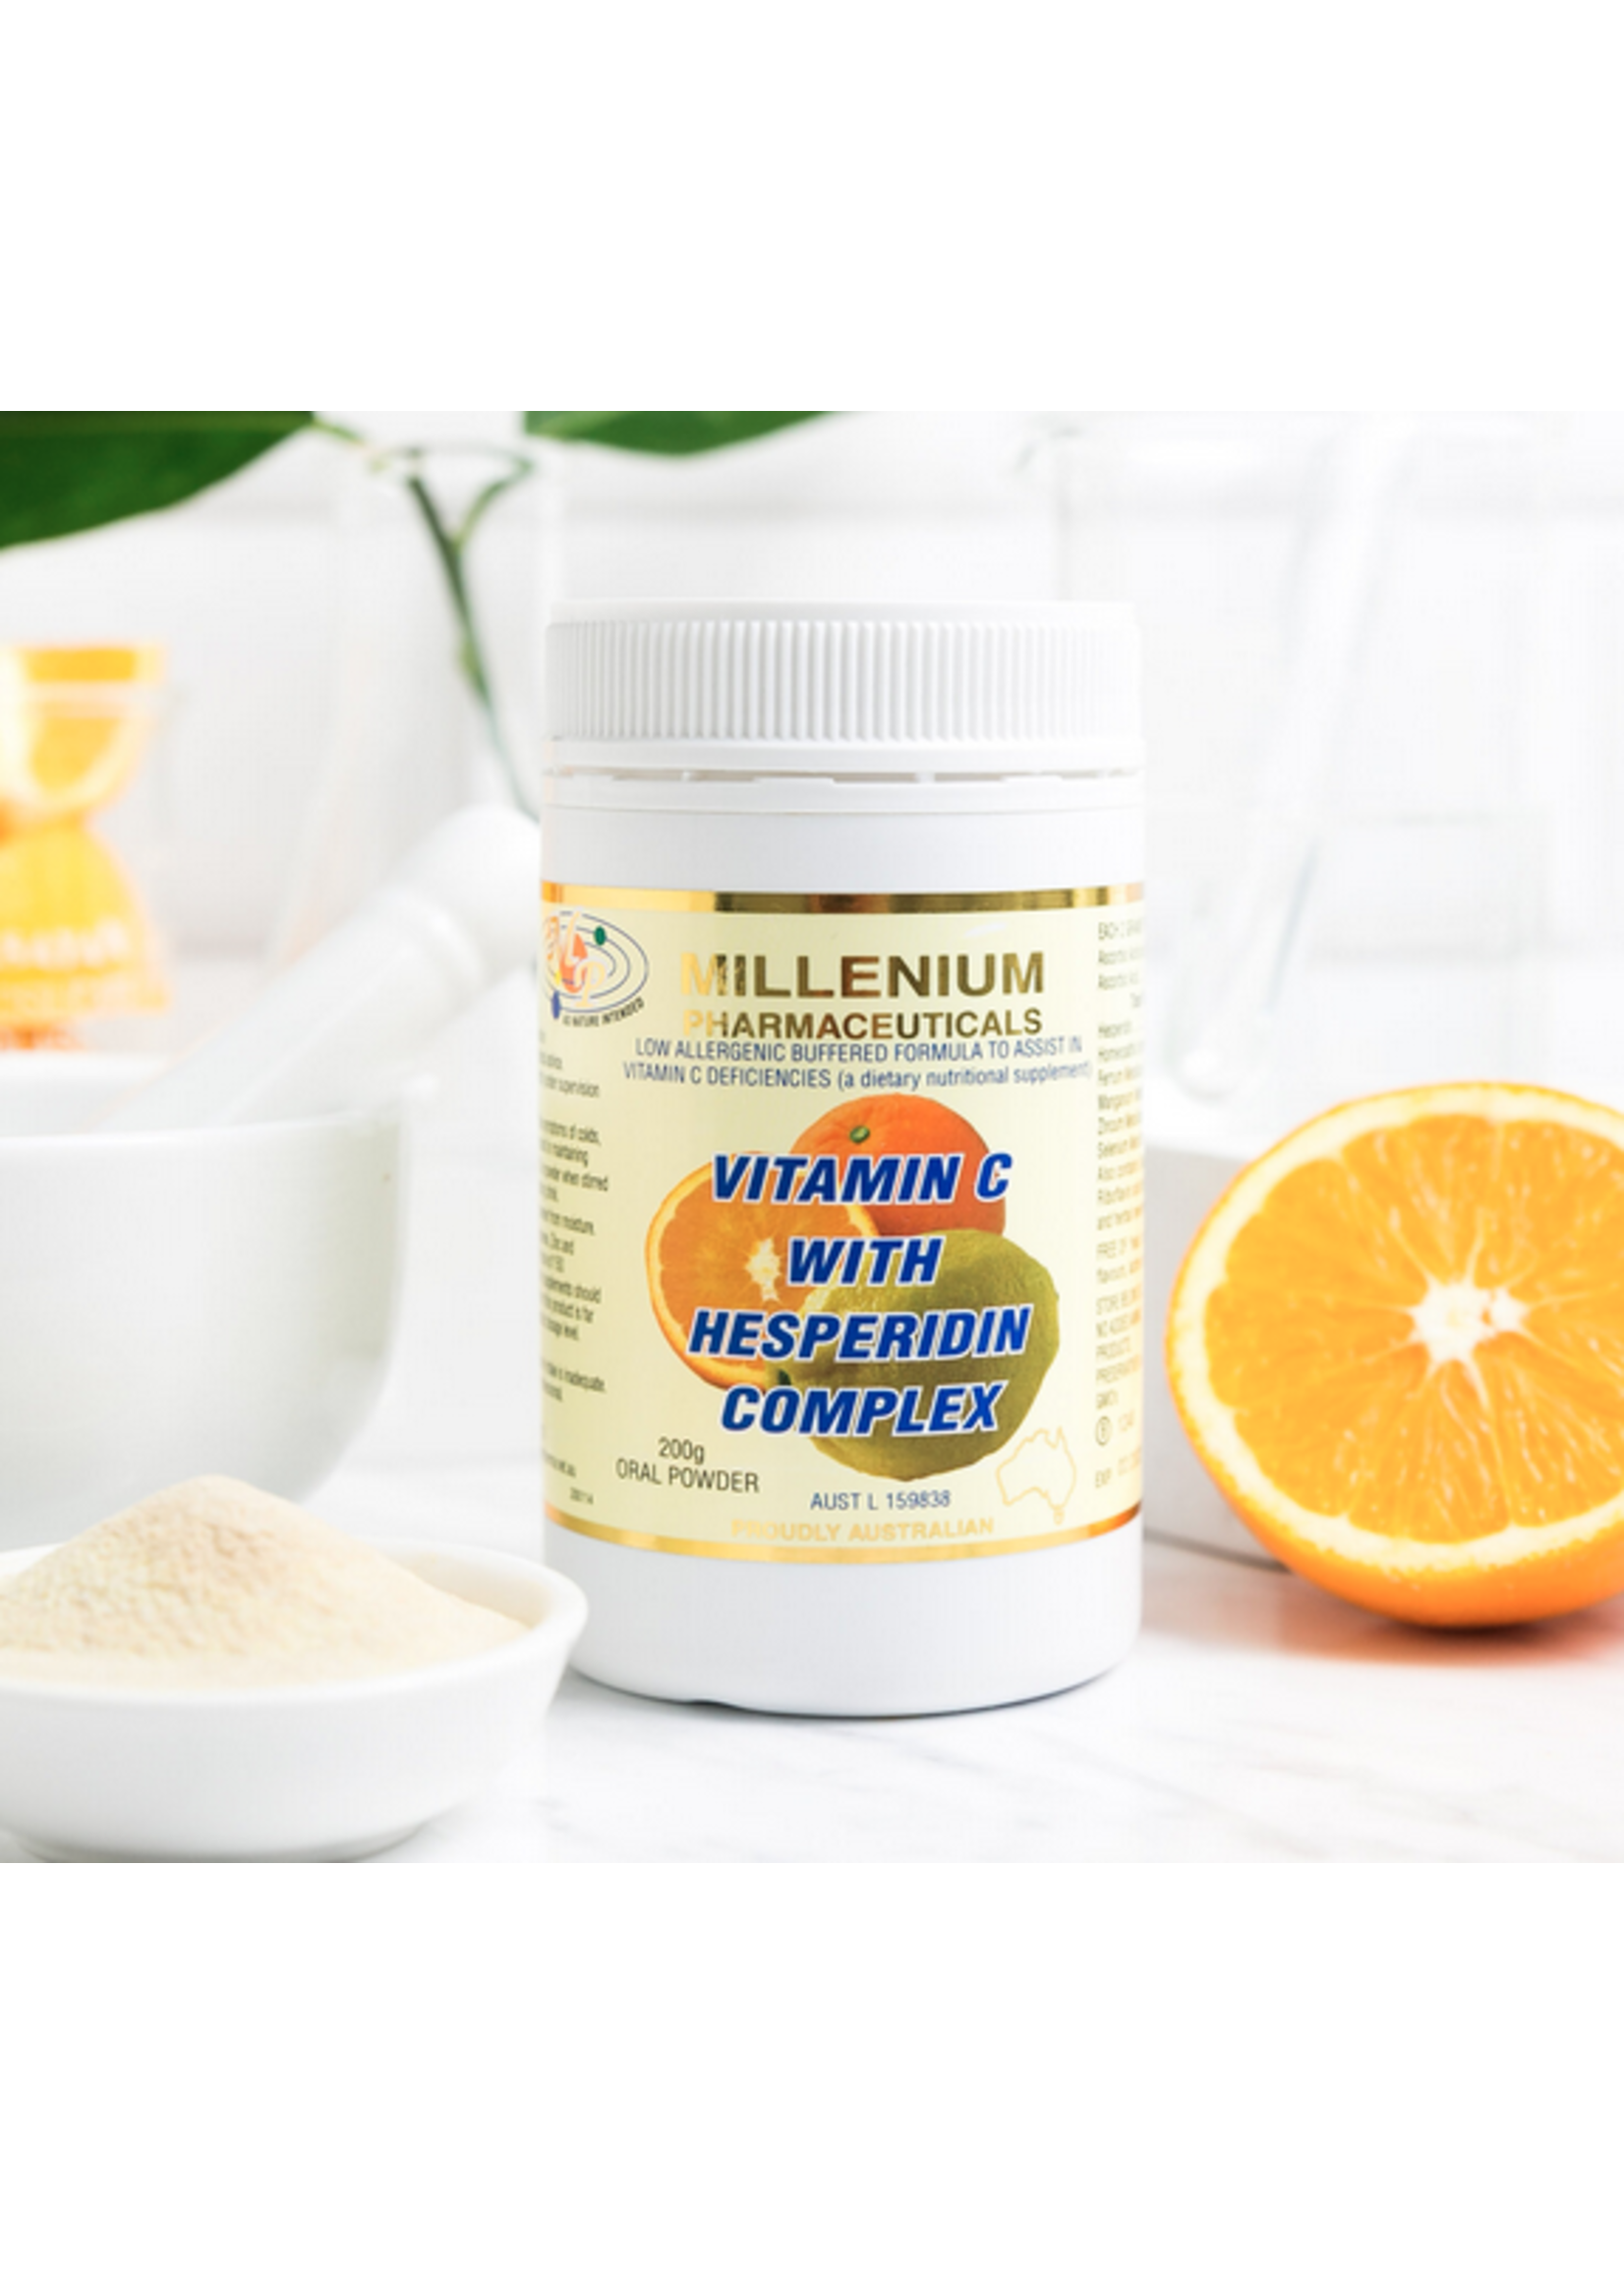 Millienium Pharnaceuticals Millenium Pharmaceuticals Vitamin C with Hesperidin 200gm